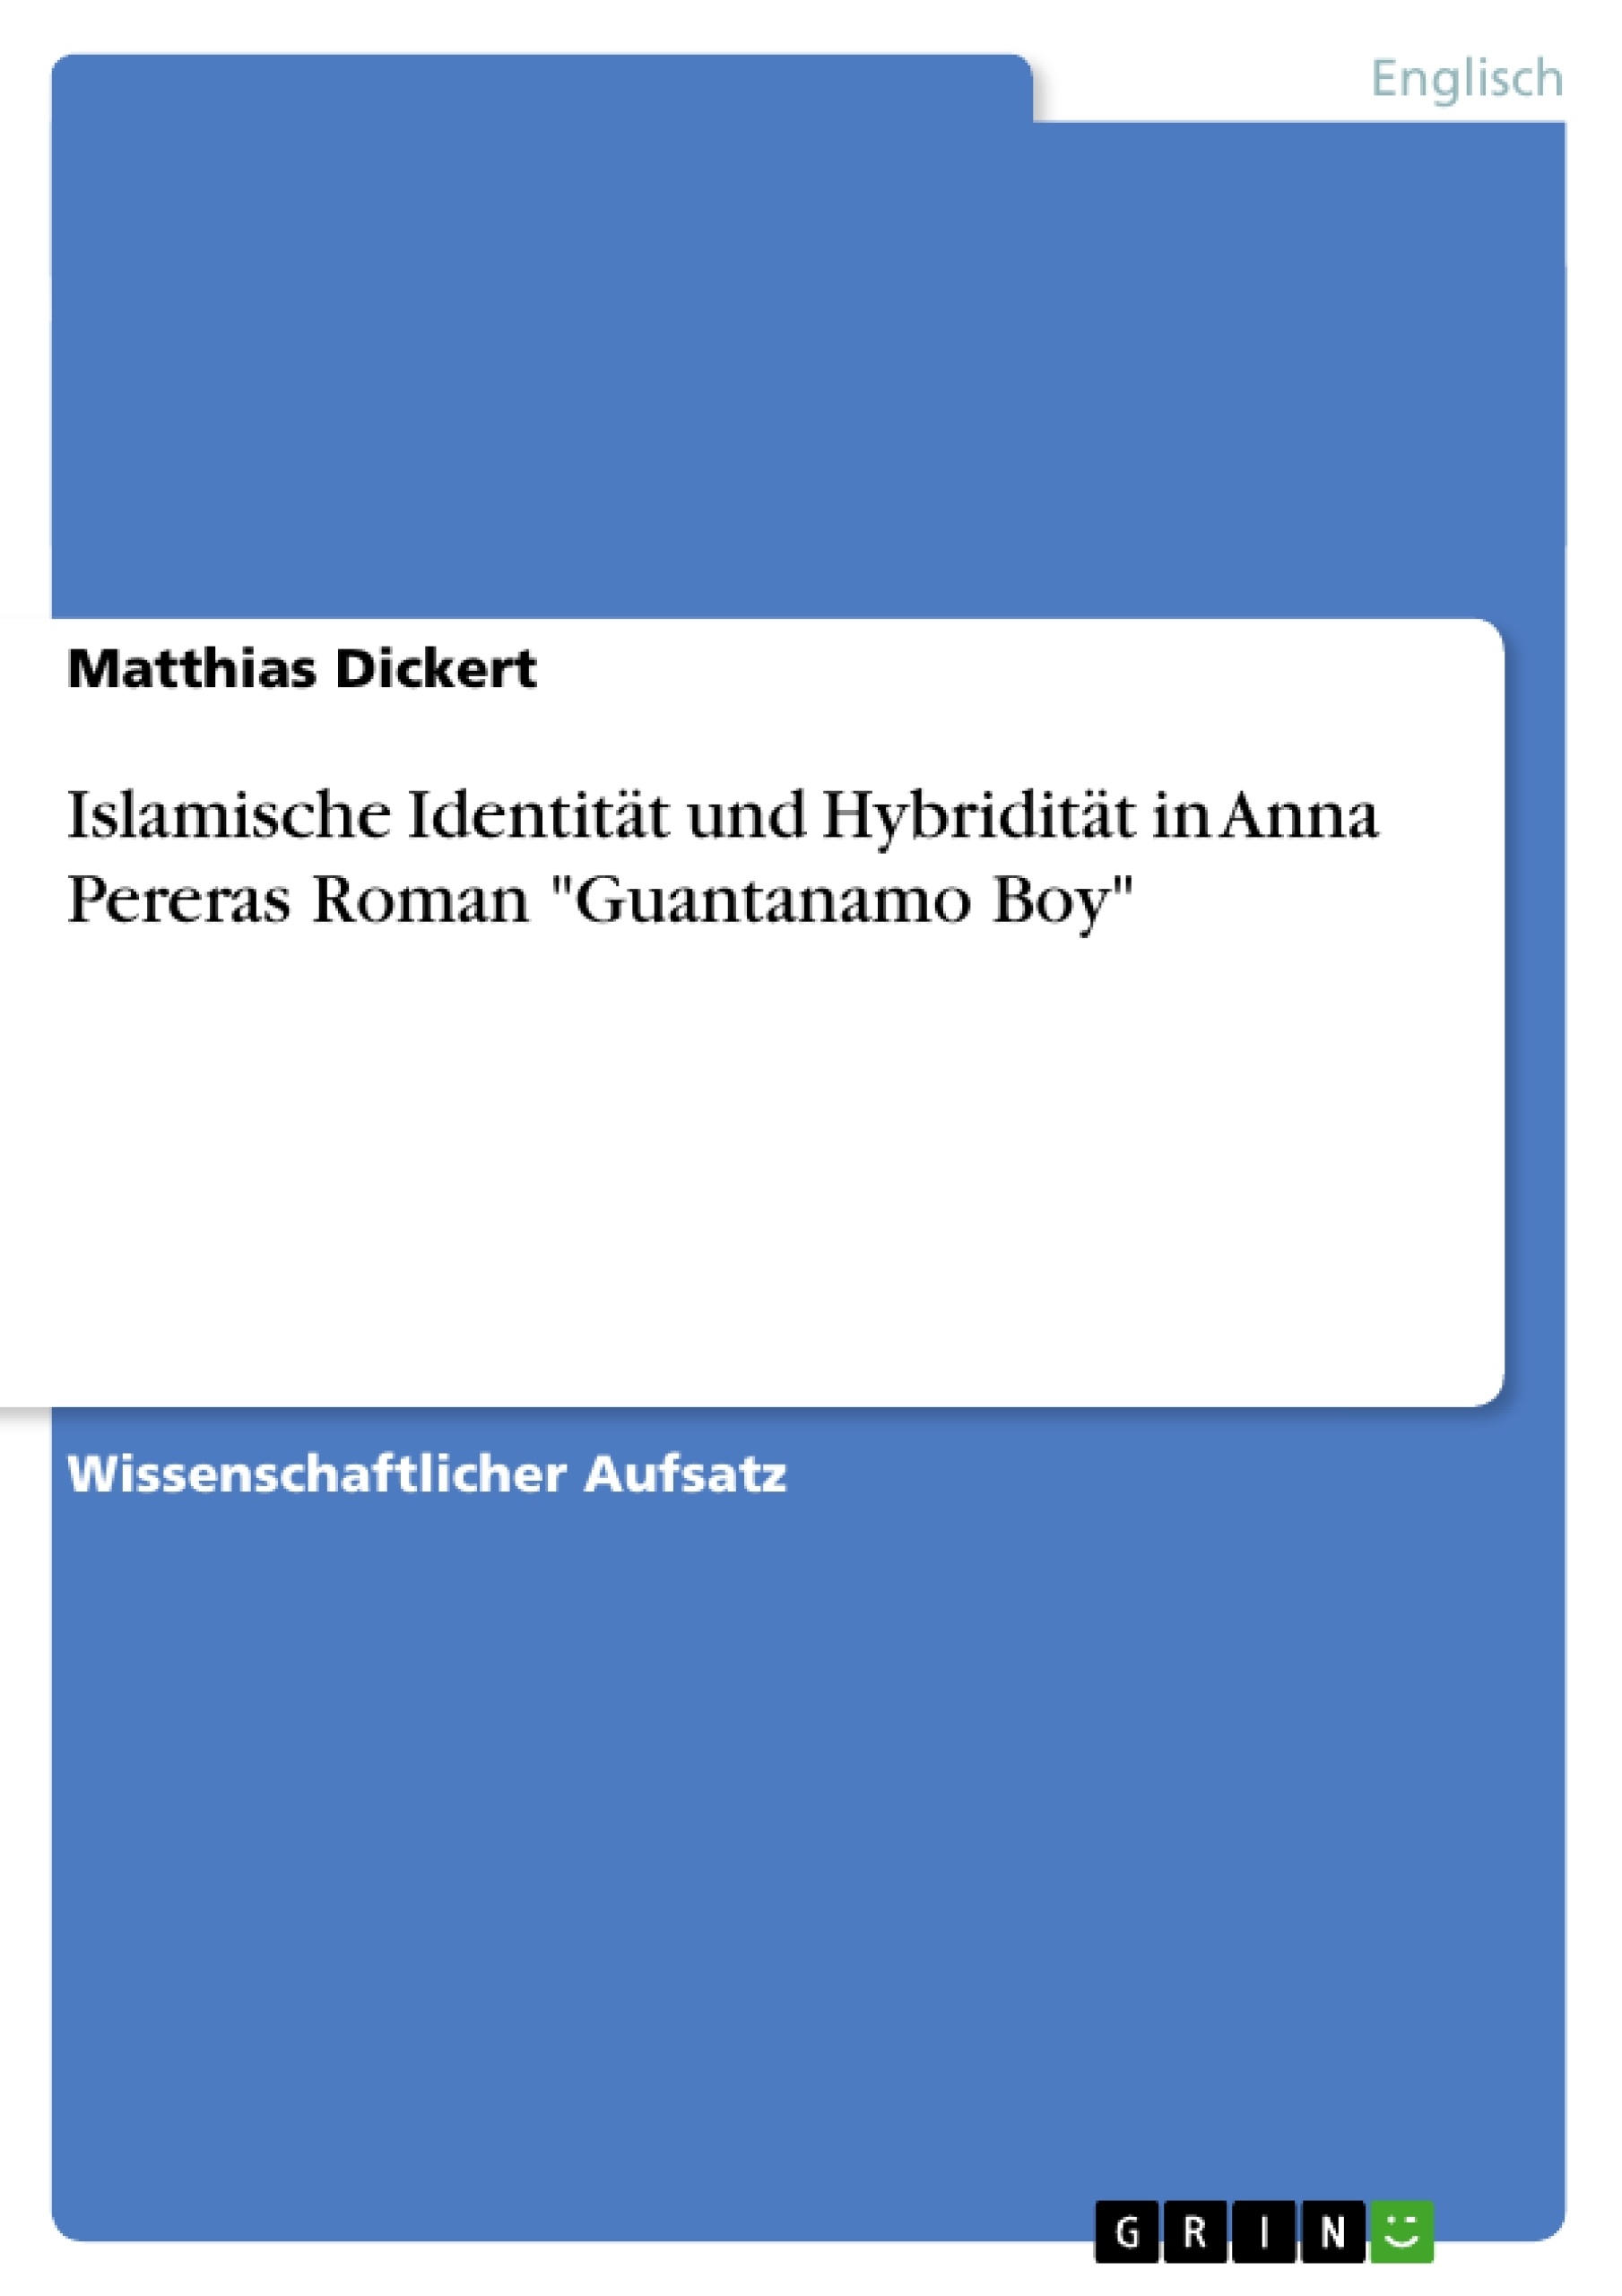 Título: Islamische Identität und Hybridität in Anna Pereras Roman "Guantanamo Boy"